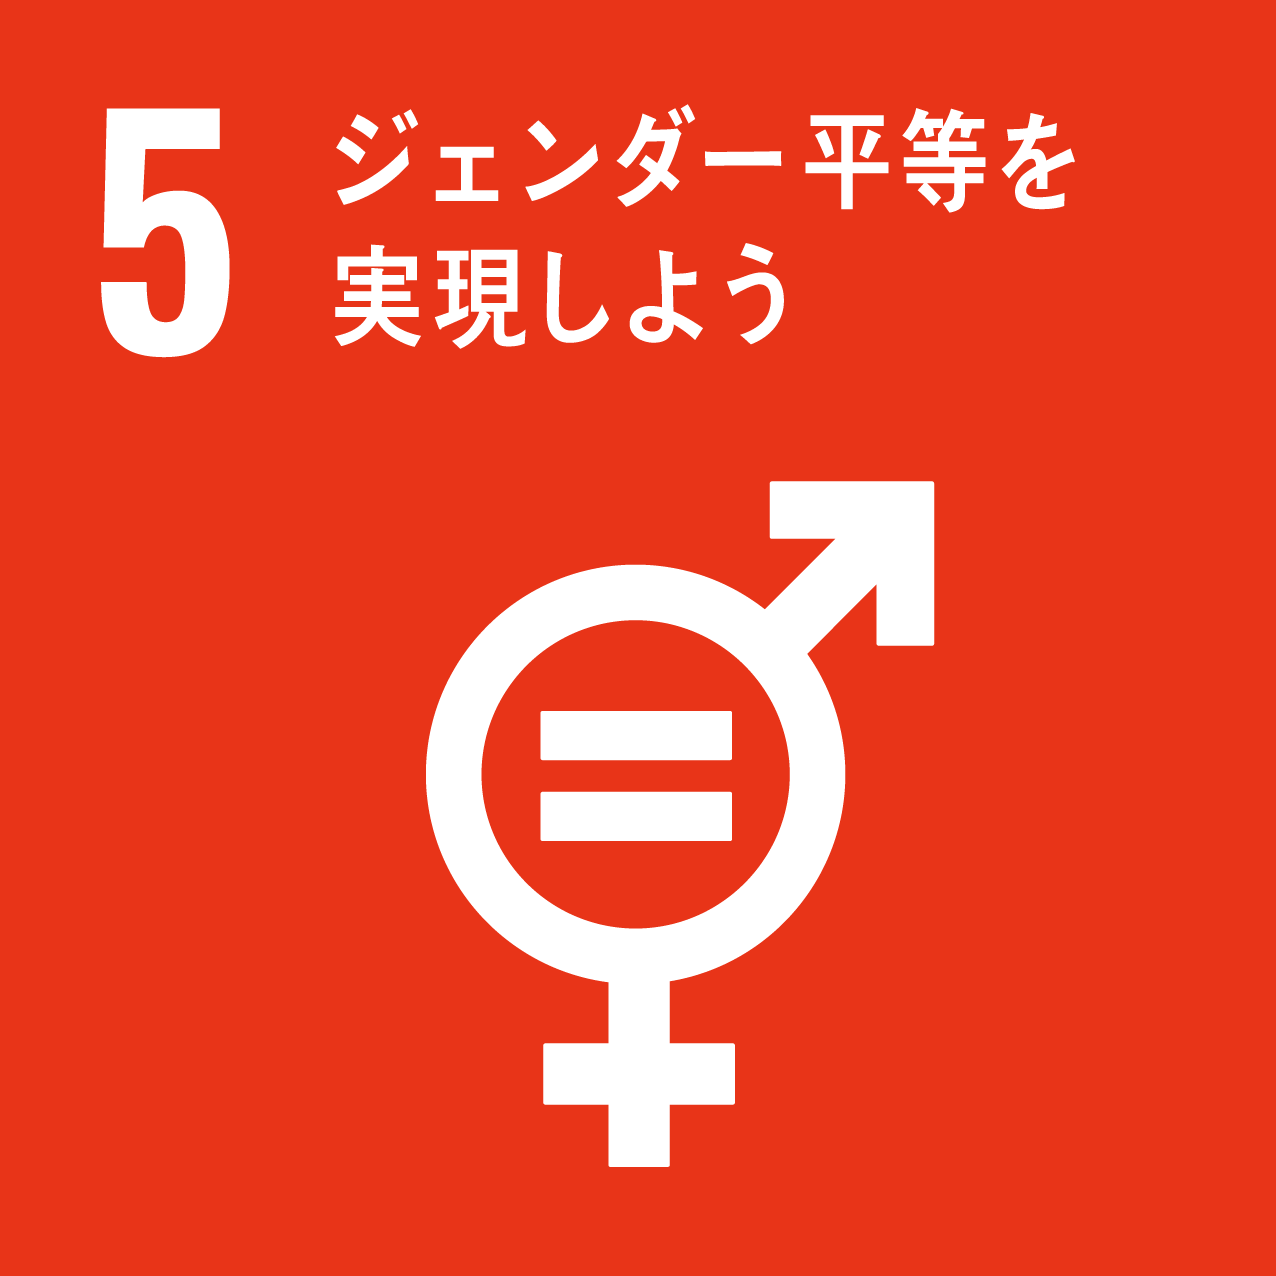 国際目標5.ジェンダー平等を実現しよう